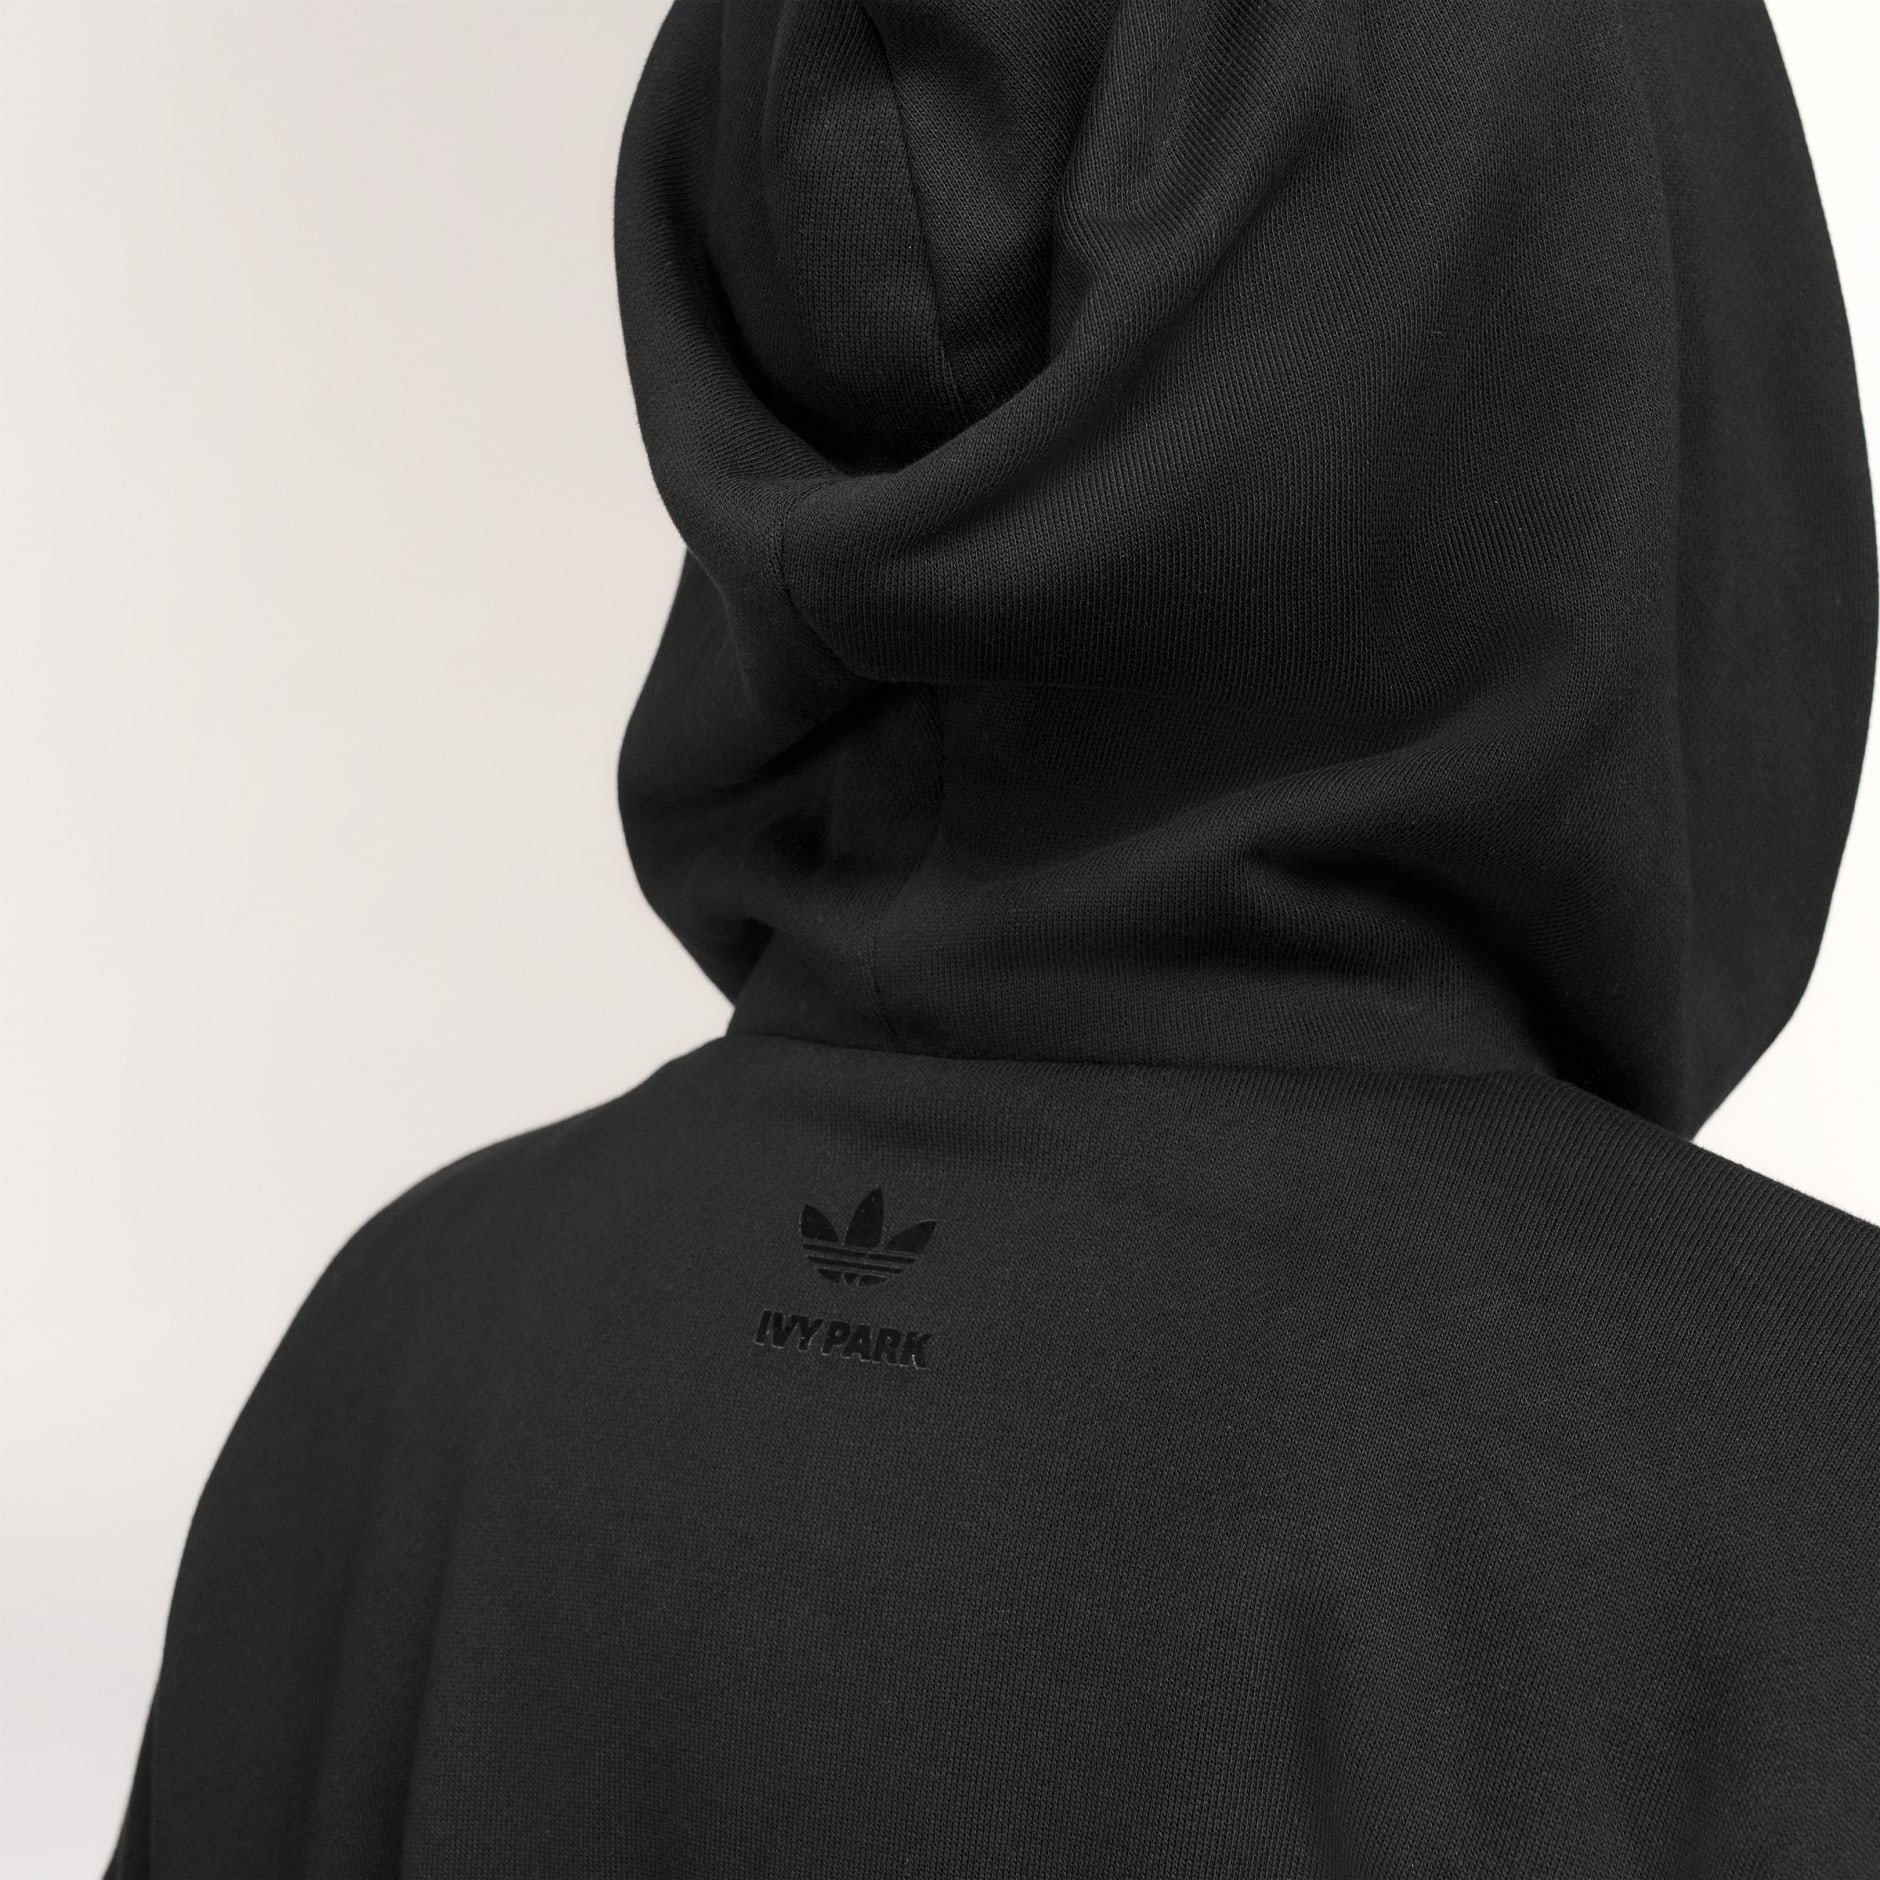 adidas Originals trefoil leggings in black, ASOS